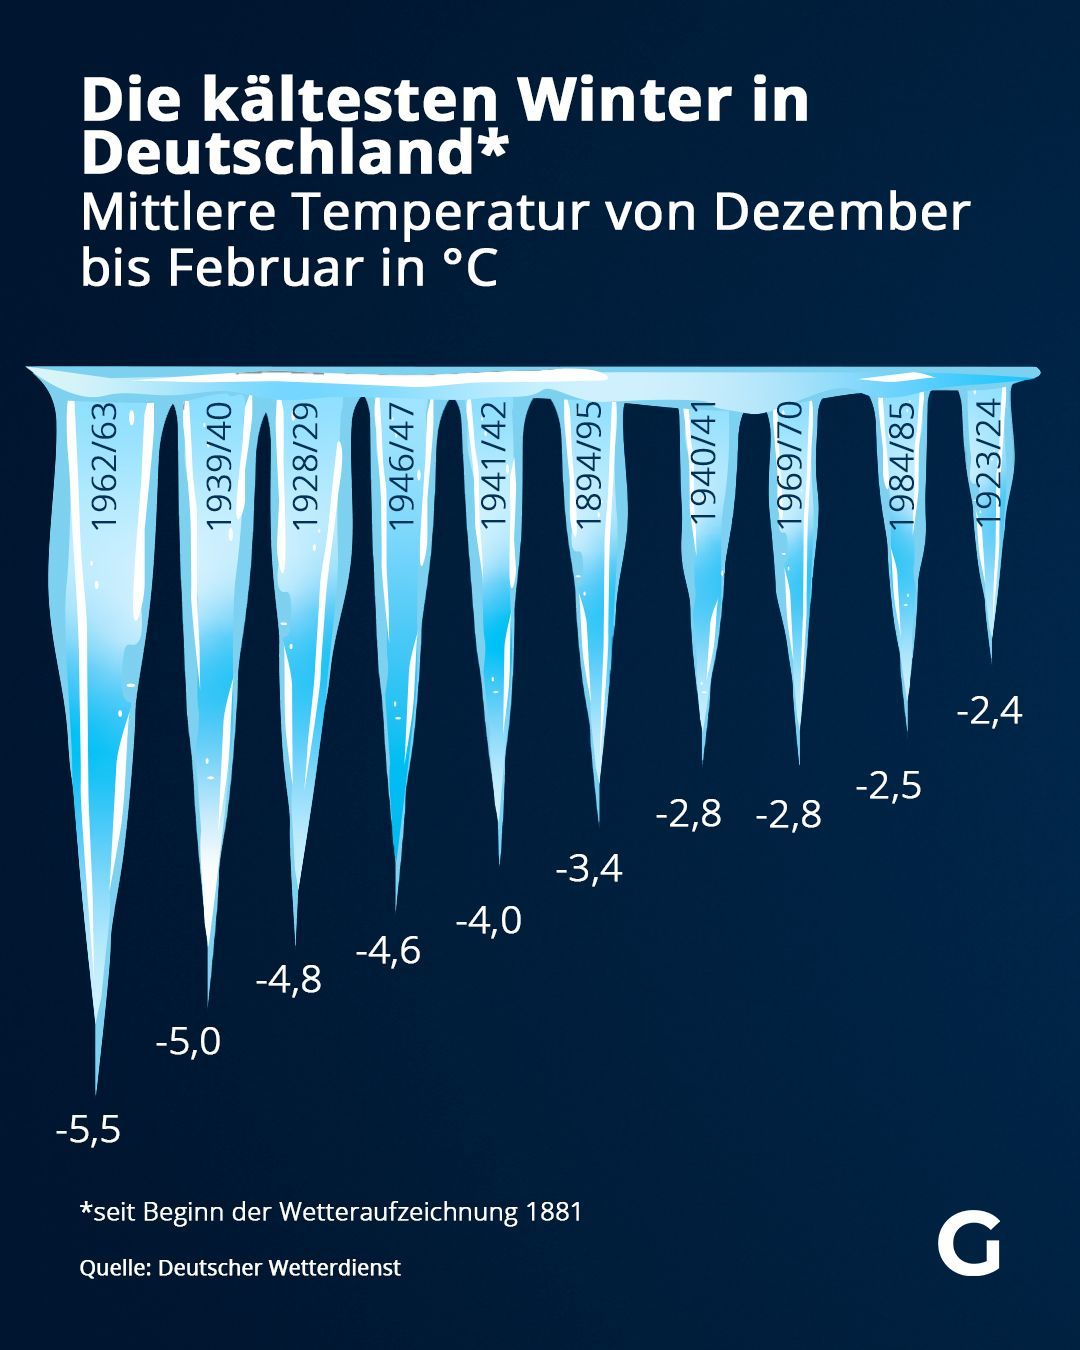 Die kältesten Winter in Deutschland auf einen Blick. Hier war die mittlere Temperatur von Dezember bis Februar in °C am niedrigsten.&nbsp;